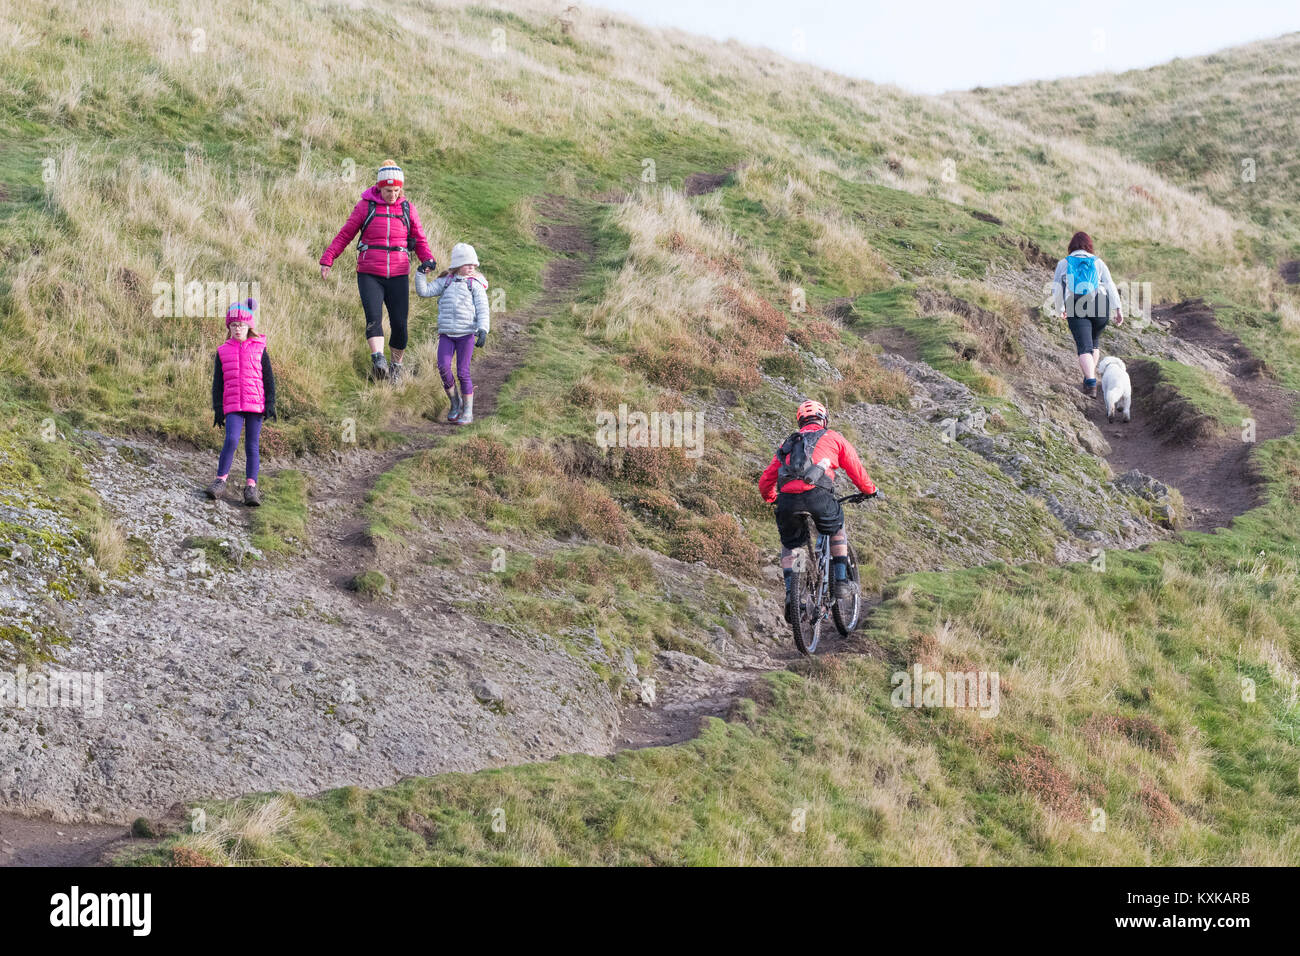 Mitbenutzung Wanderweg mit Radfahrer, Spaziergänger und Dog Walker - Dumyat, Ochil Hills, Stirling, Schottland, UK Stockfoto